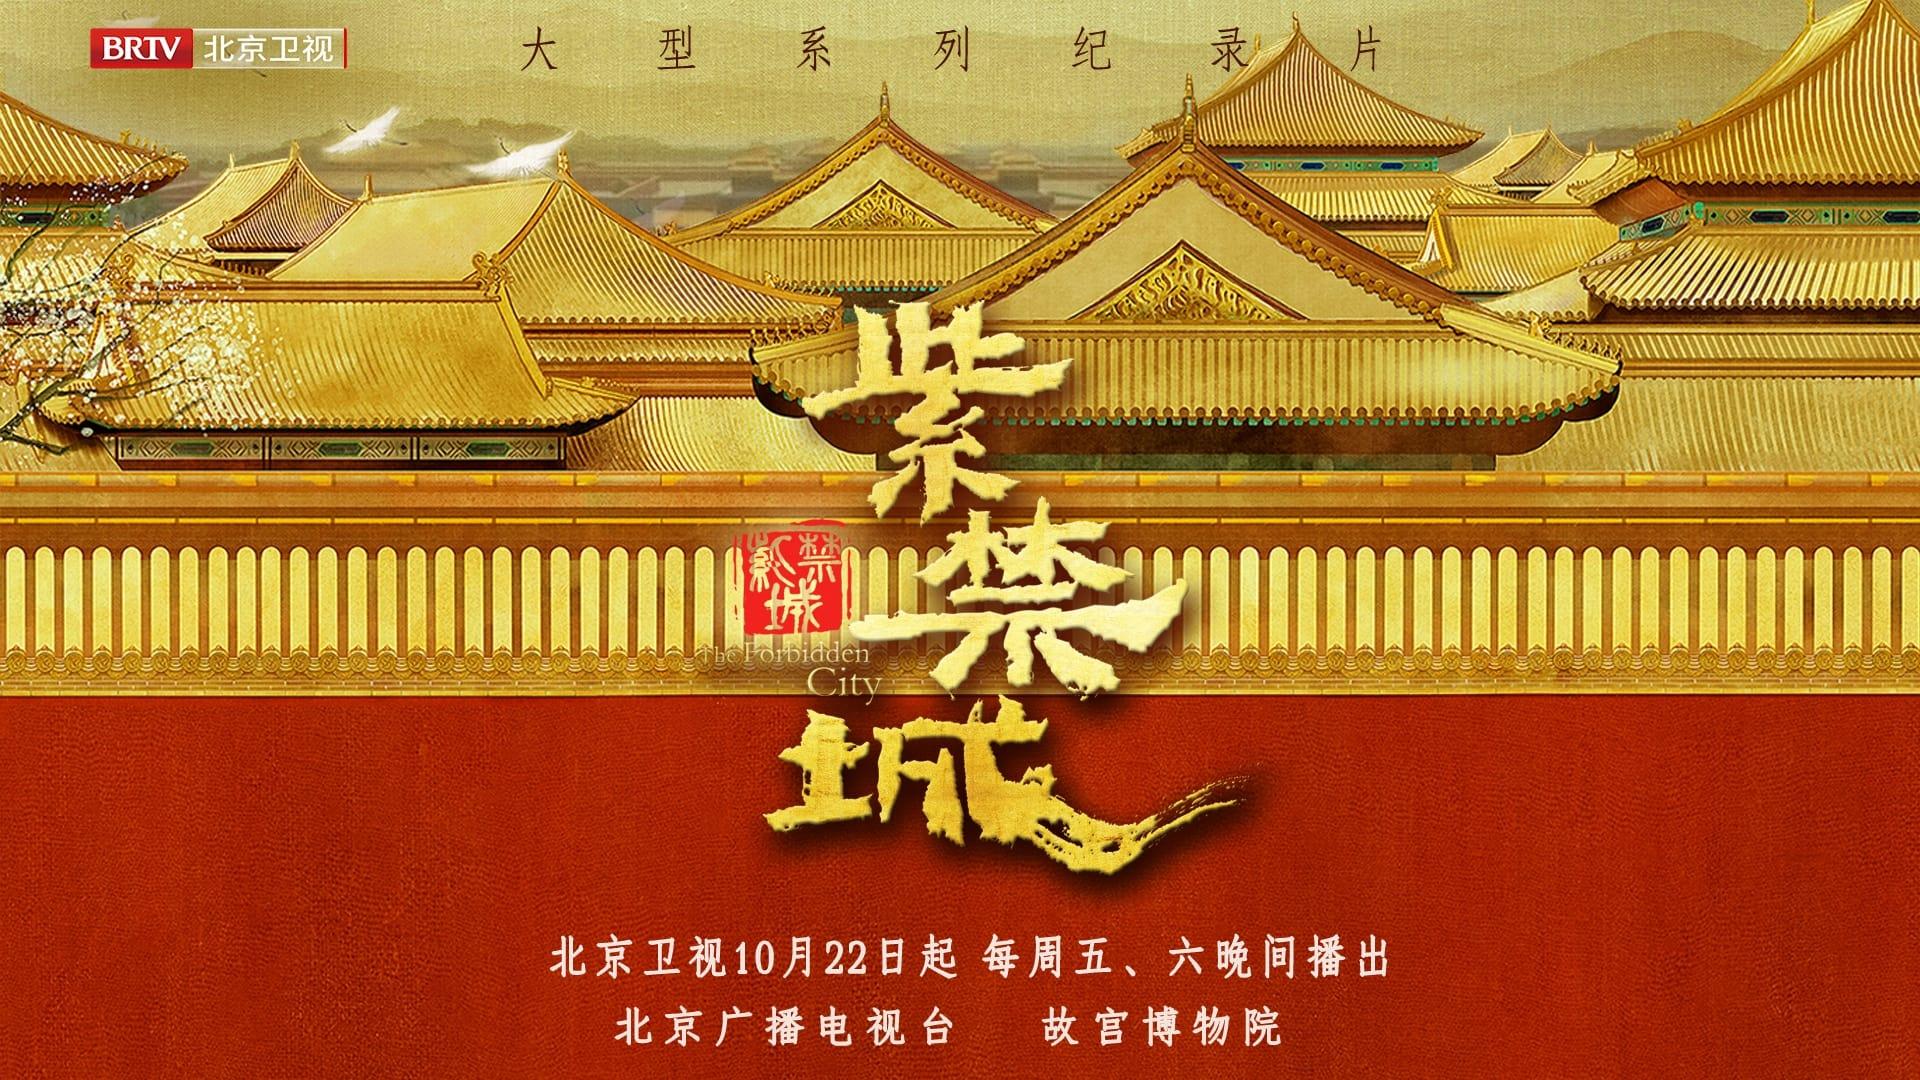 The Forbidden City backdrop